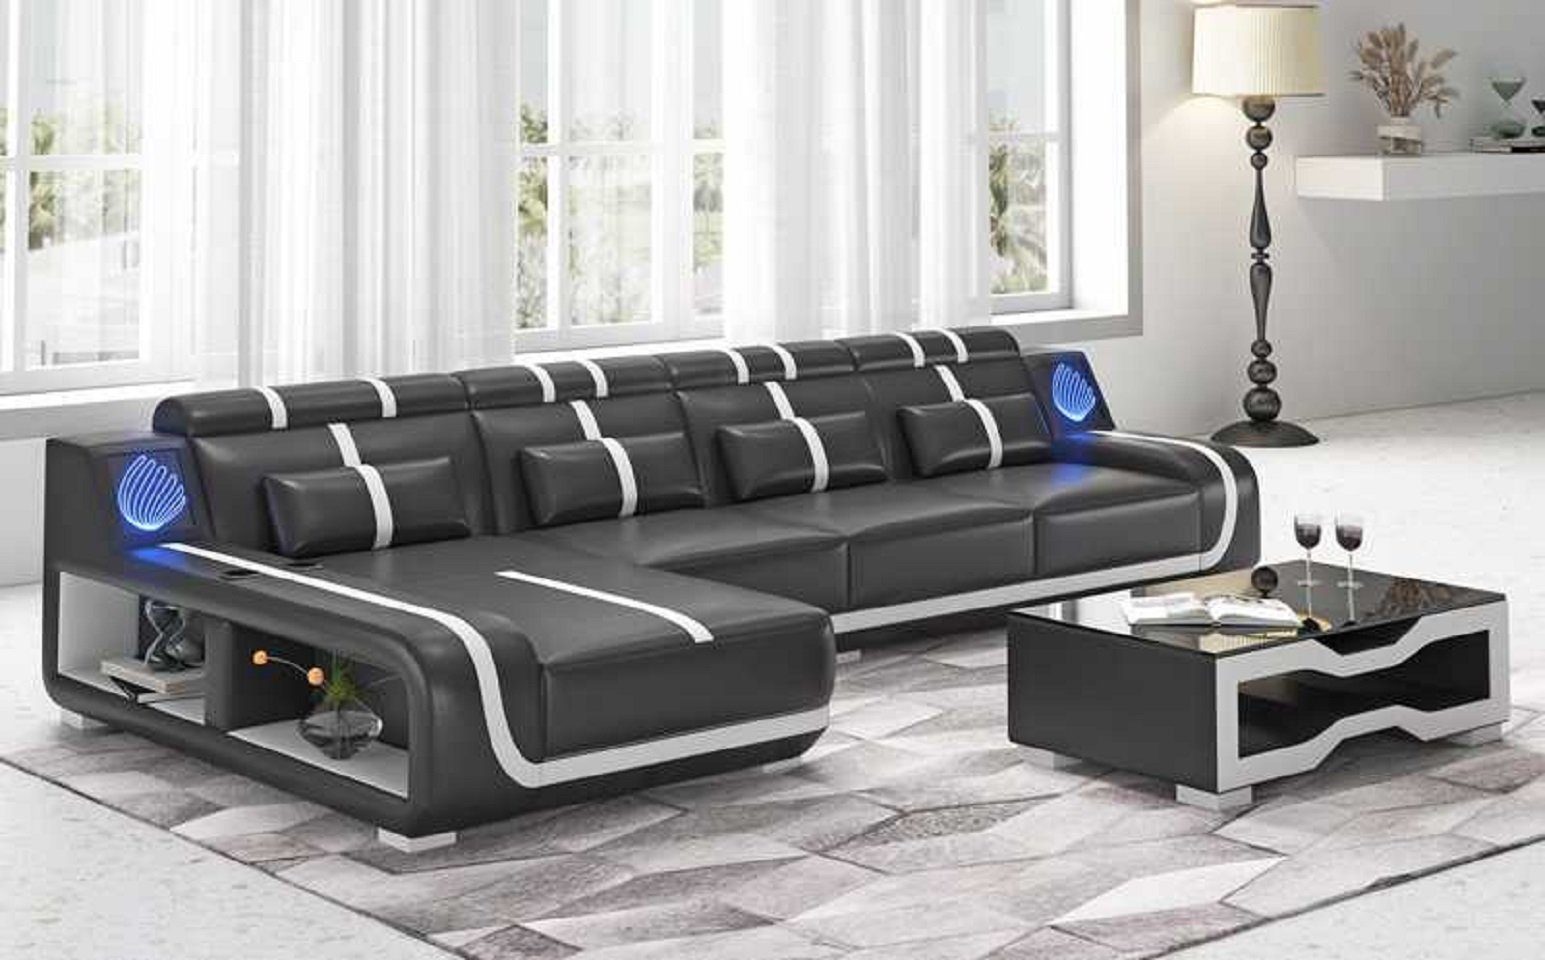 JVmoebel Ecksofa Design Ecksofa Couch L Form Liege Modern Sofa couchen, 3 Teile, Made in Europe Schwarz